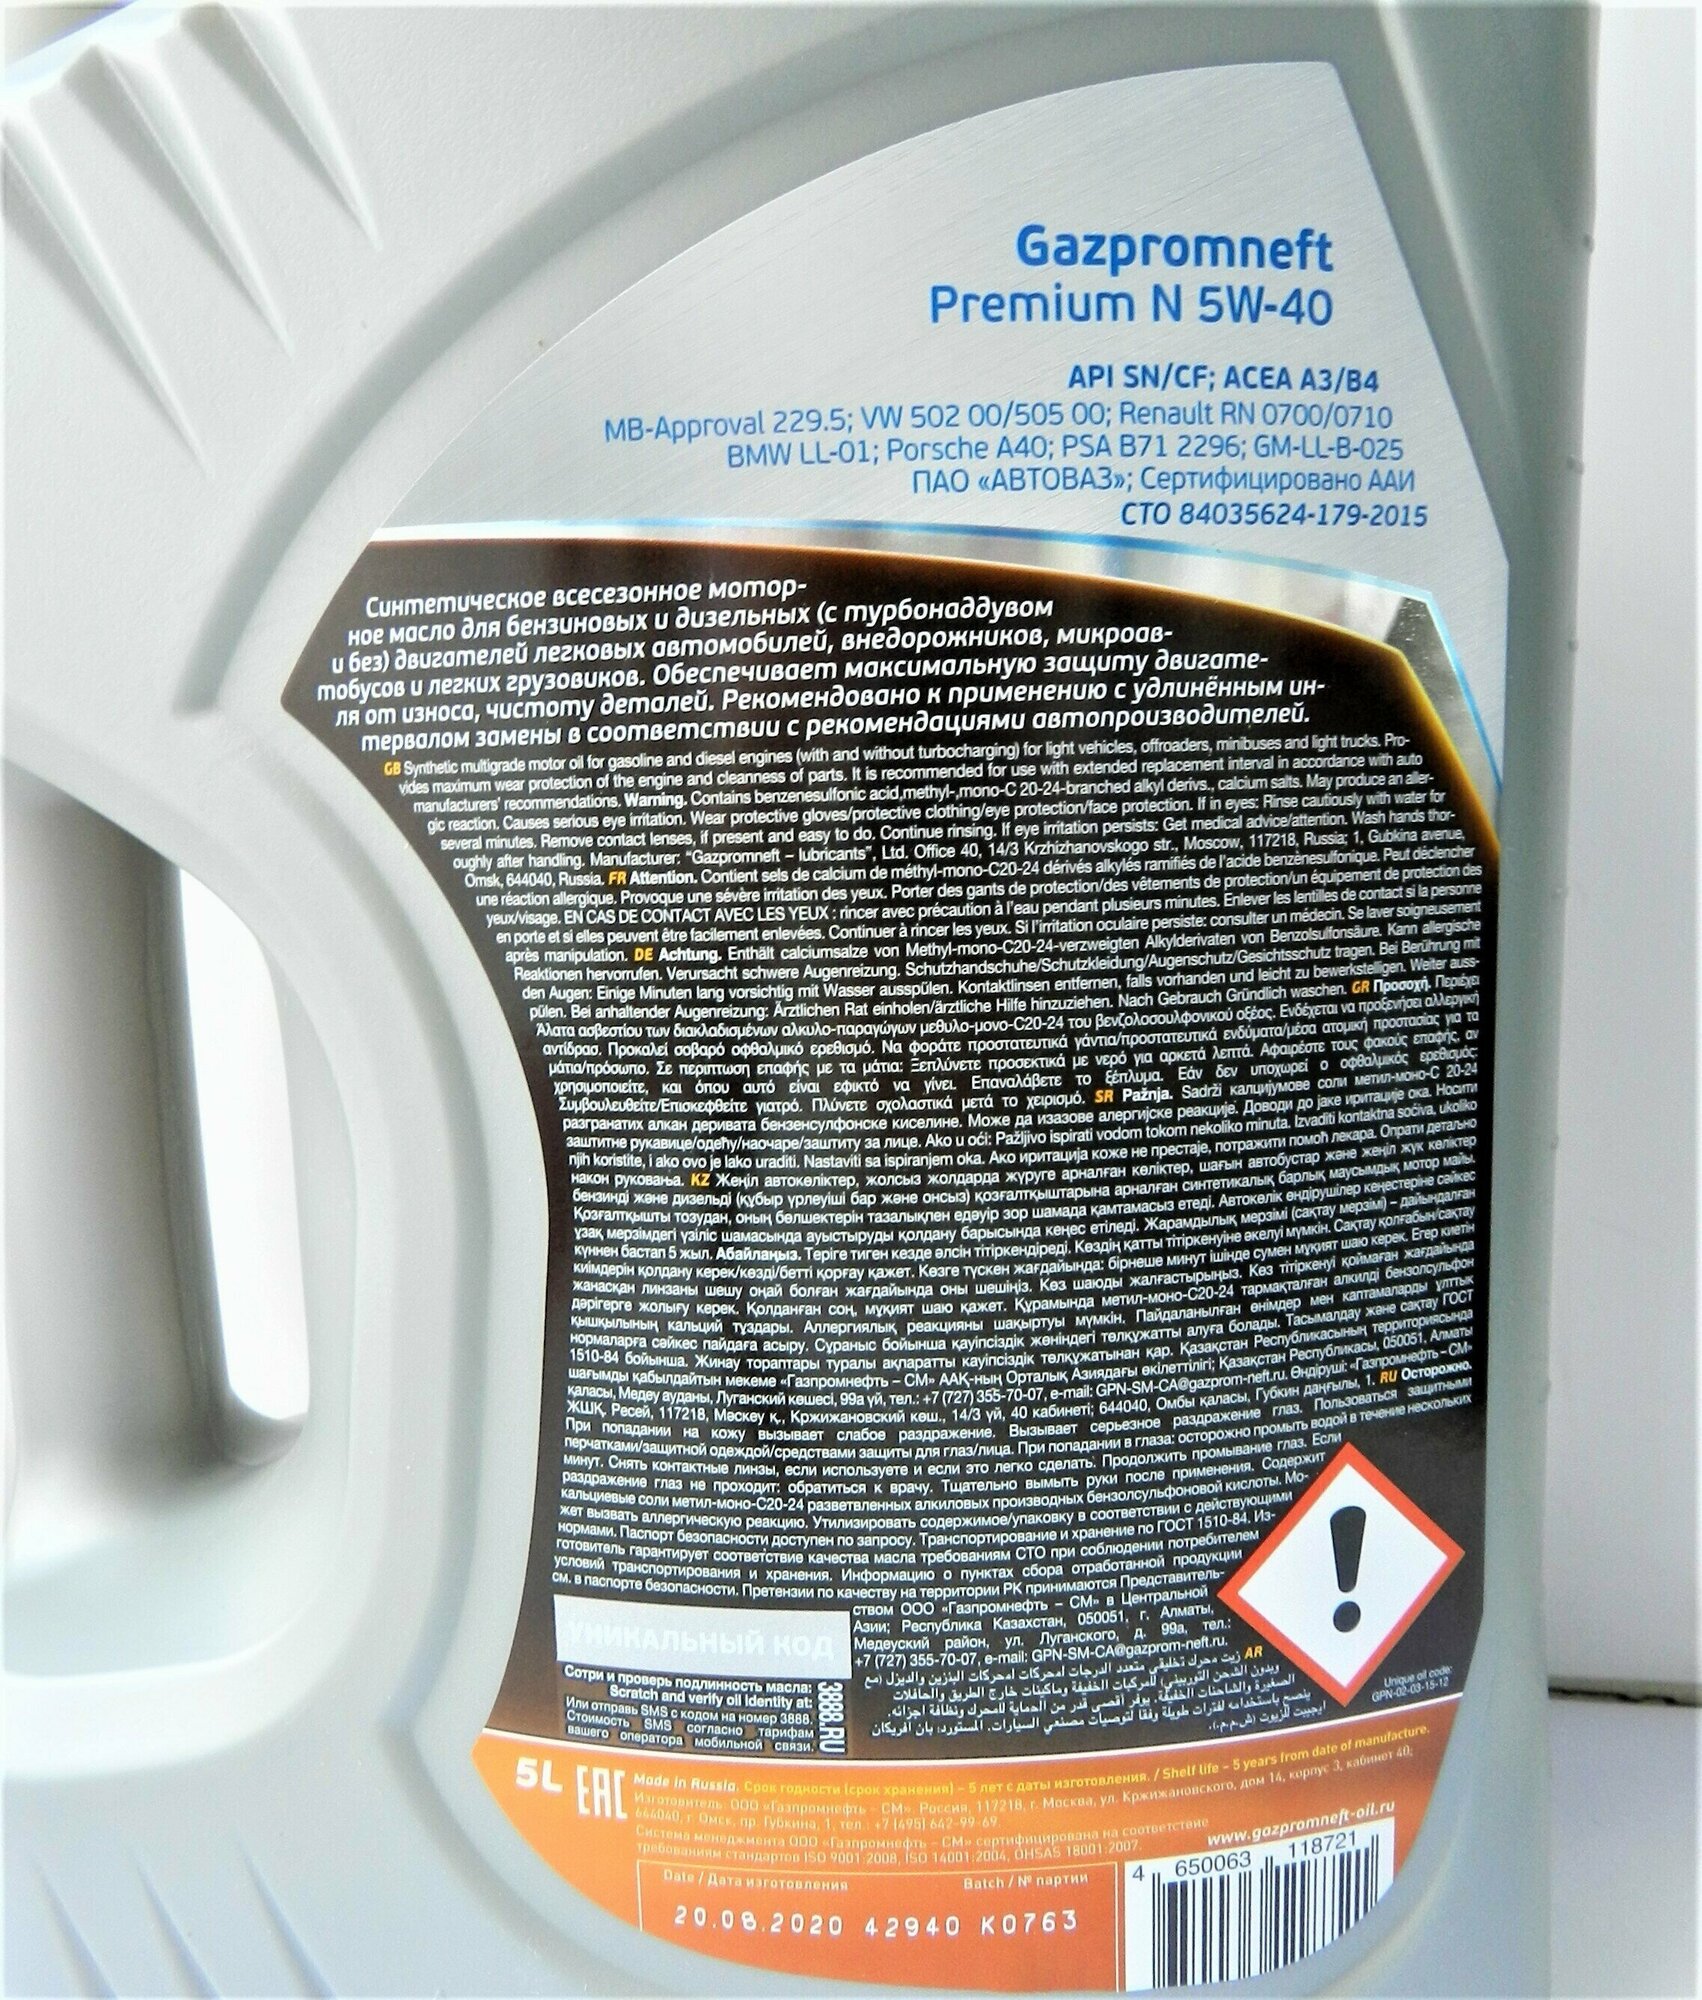 Полусинтетическое моторное масло Газпромнефть Premium N 5W-40